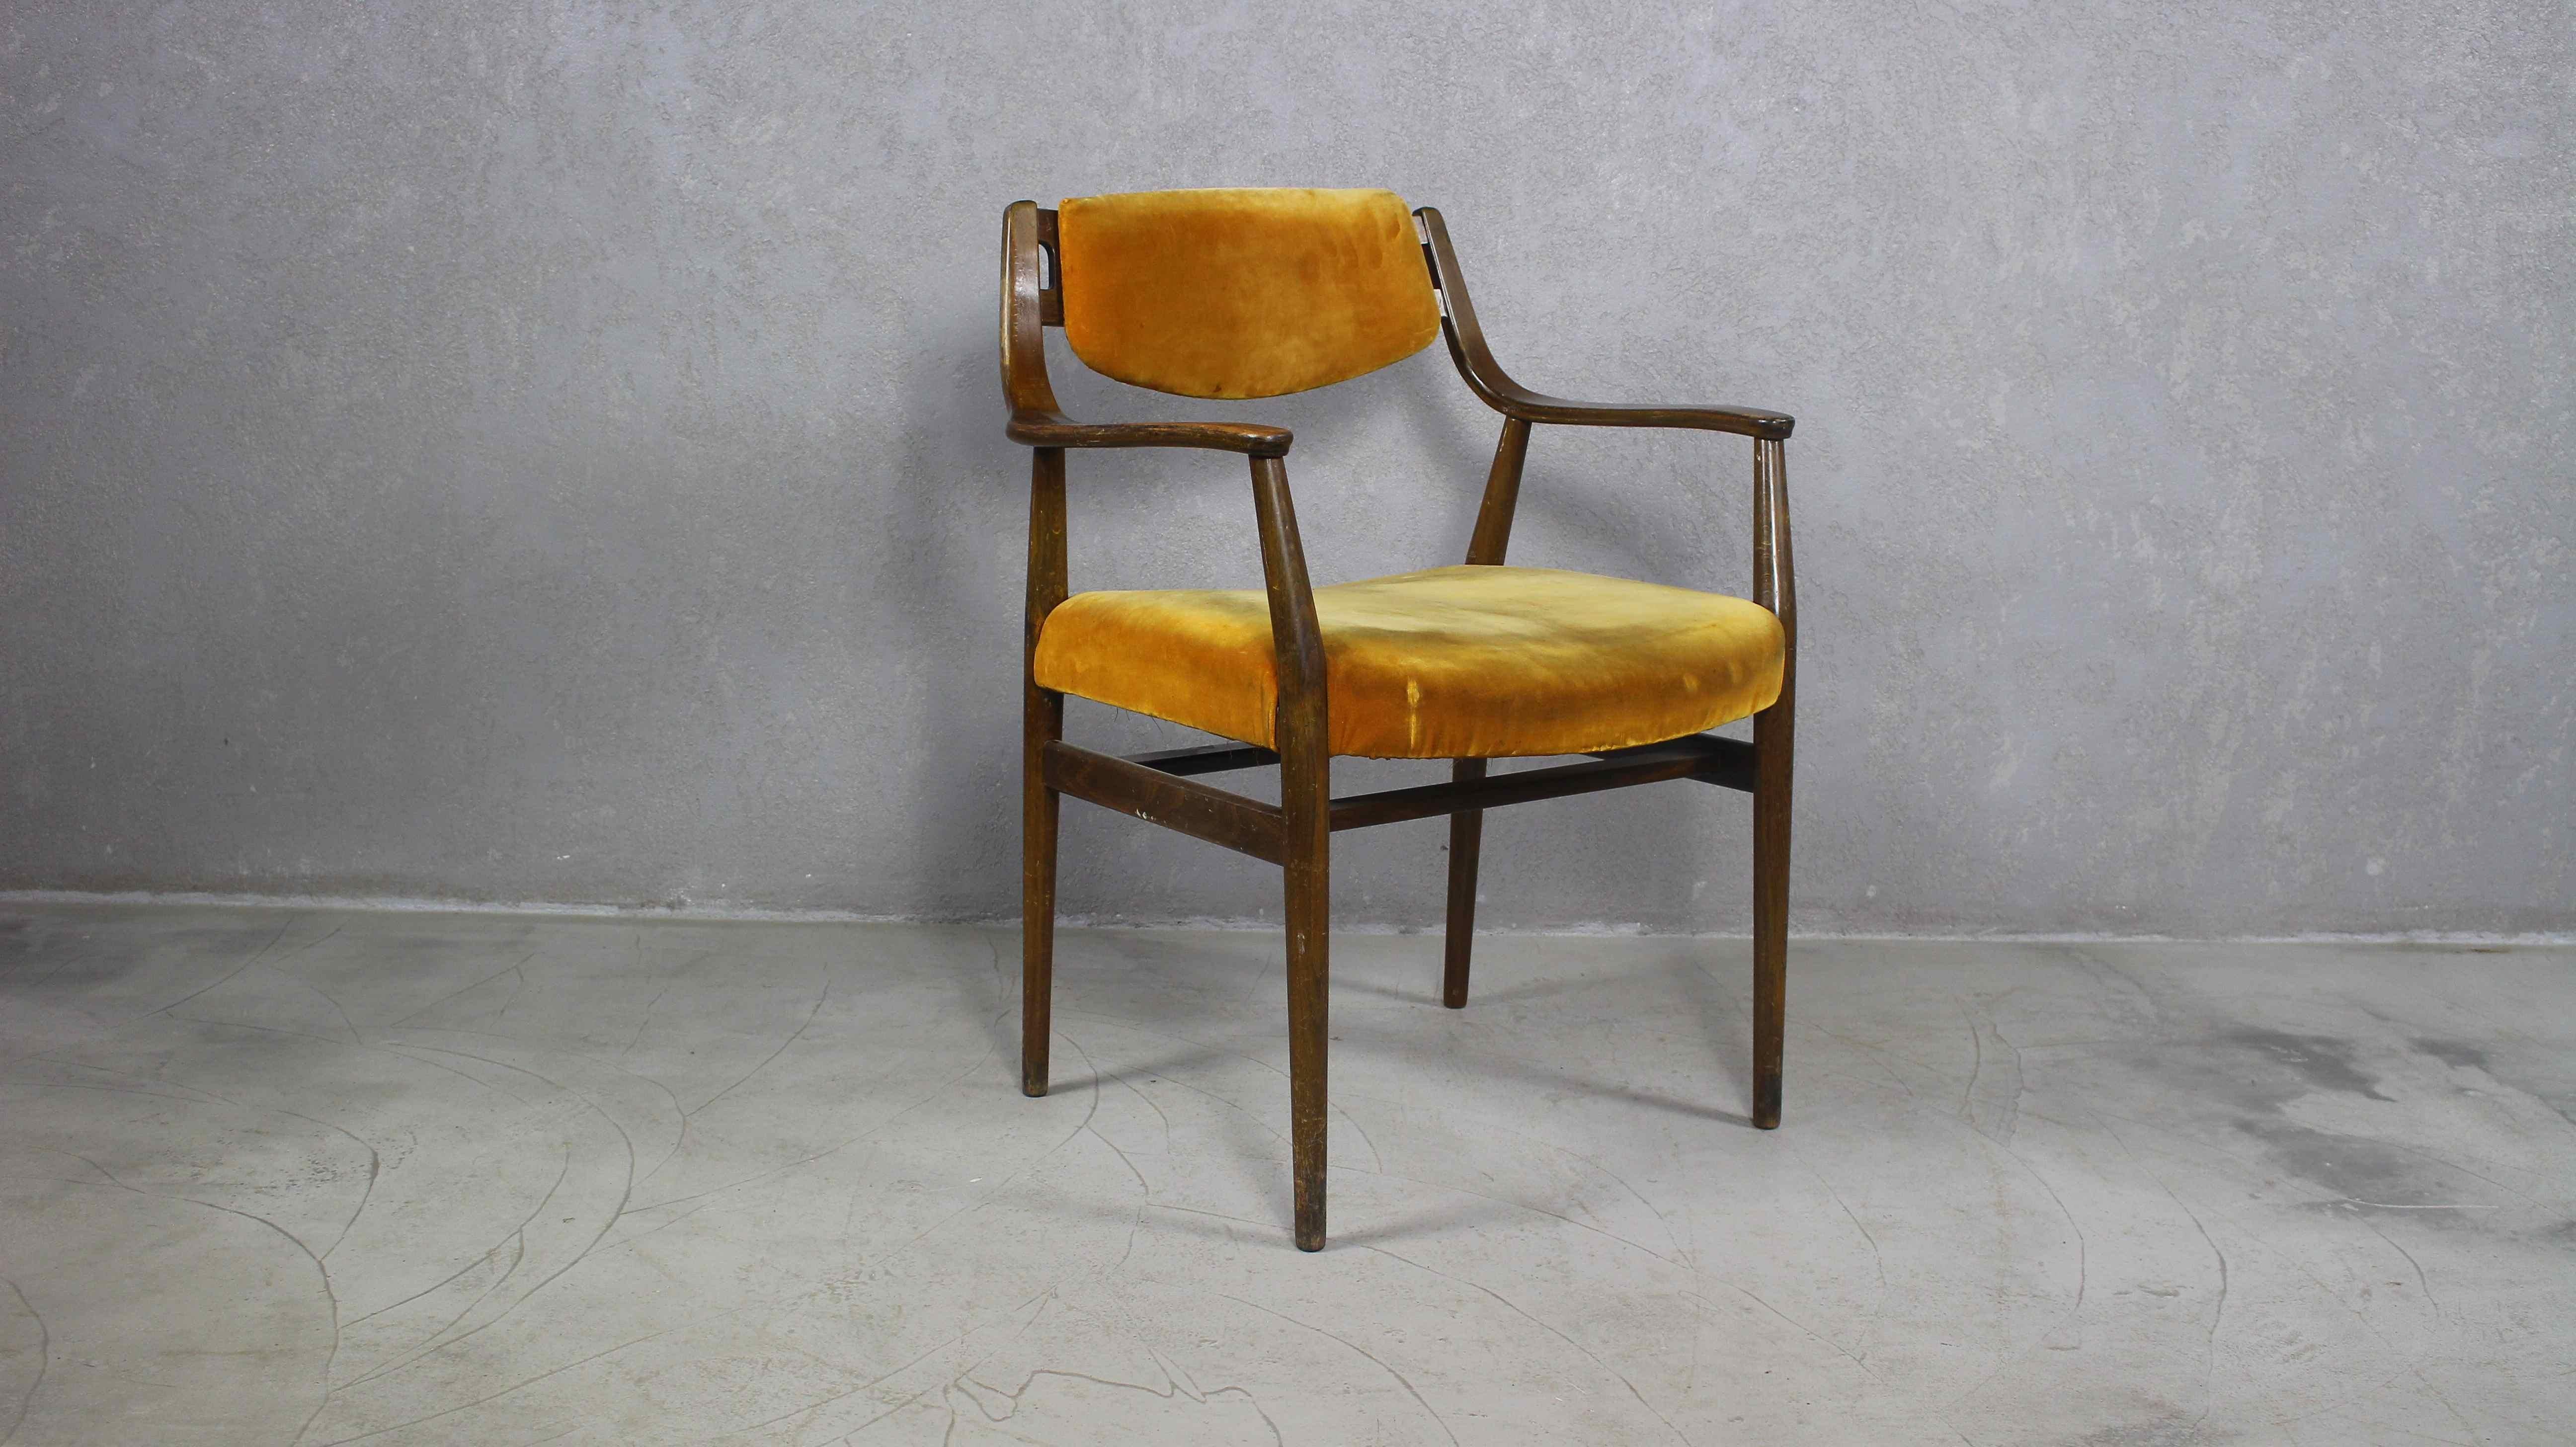 Dänischer Vintage-Sessel aus Holz aus den 1960er Jahren.
Eleganter und skulpturaler dänischer Mid-Century Modern Sessel aus Massivholz. Runde, konische Beine. Ausgestellte Armlehnen.
Sehr gut als Schreibtischstuhl geeignet
Ähnliches Design und